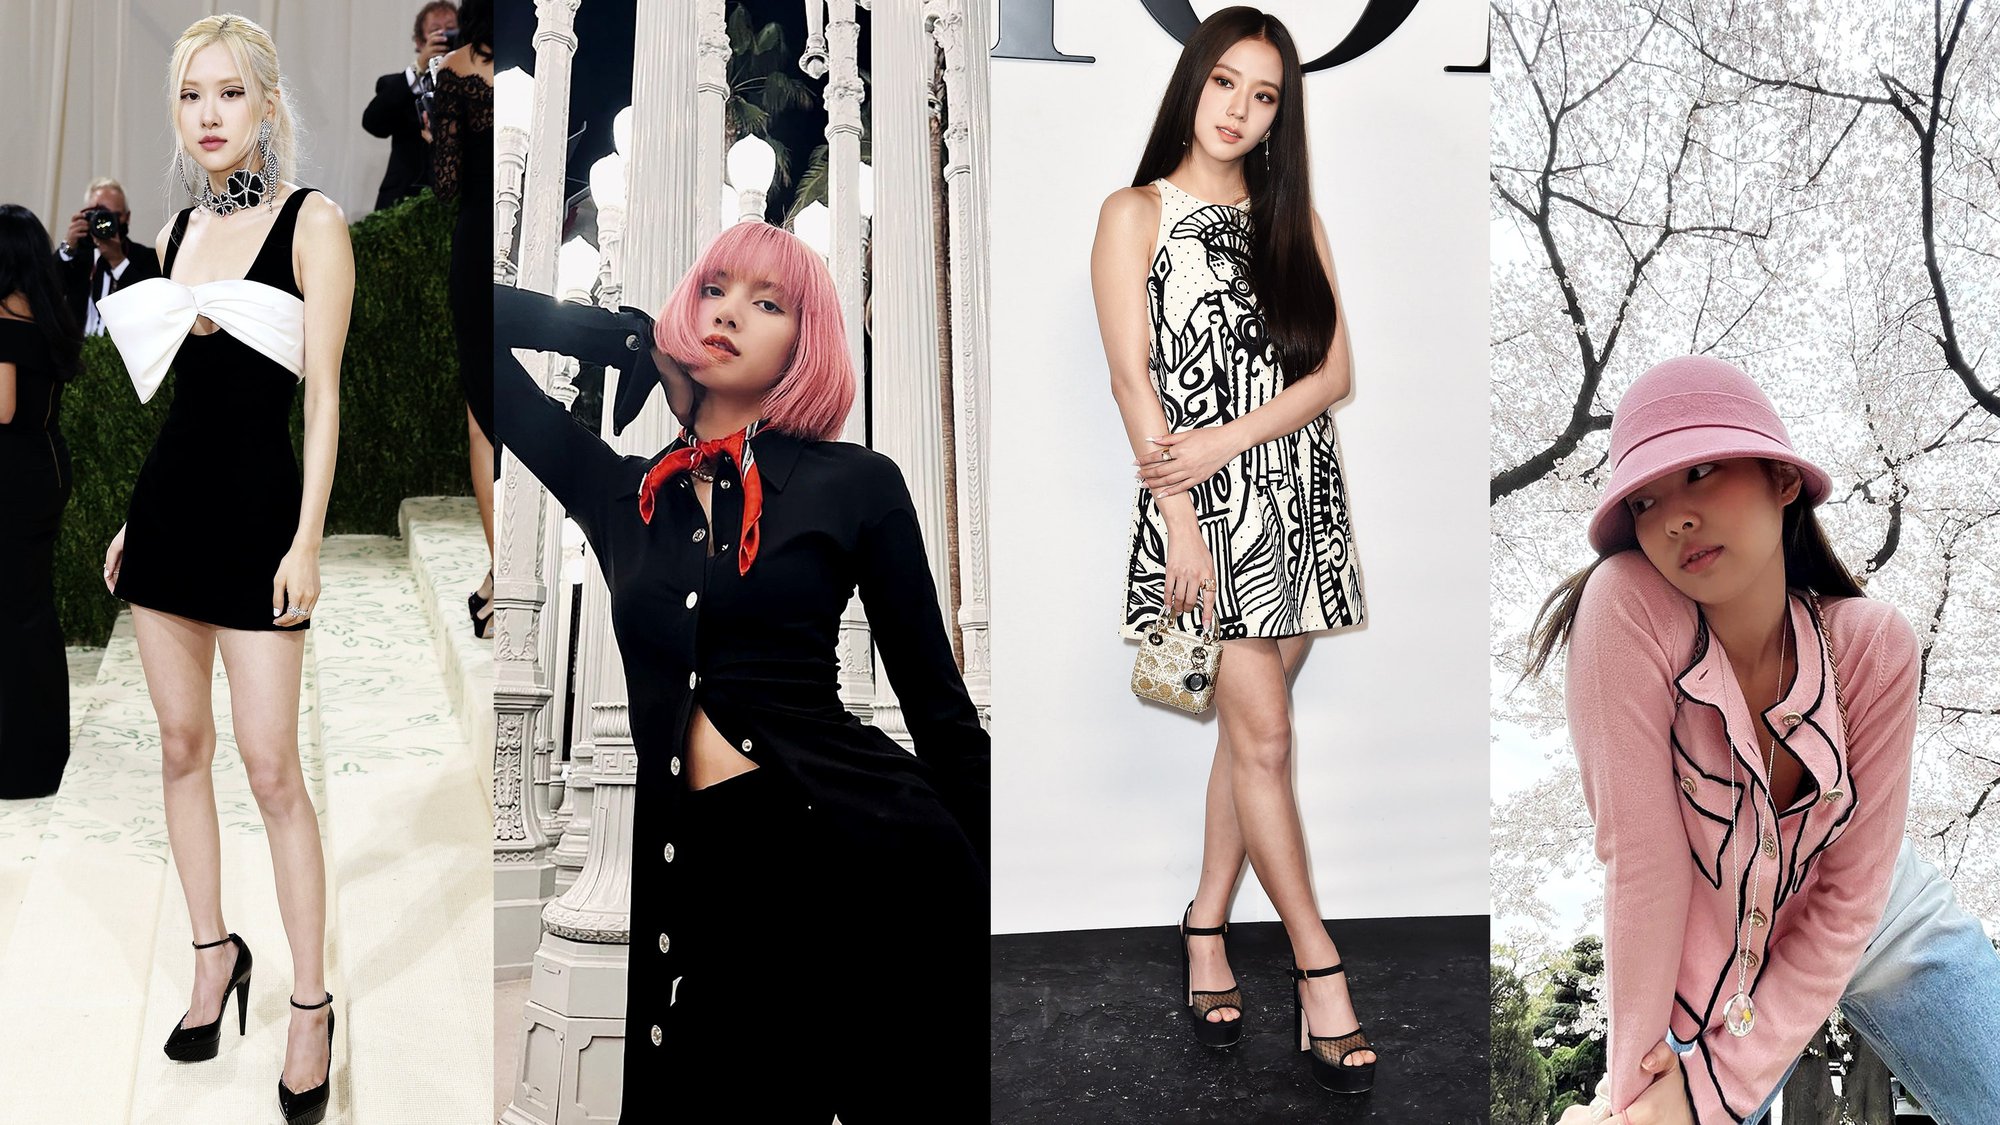 Gọi YG là công ty thời trang bởi idol nào cũng có style đẹp xuất sắc, nhóm nữ mới liệu có phát huy truyền thống này? - Ảnh 5.